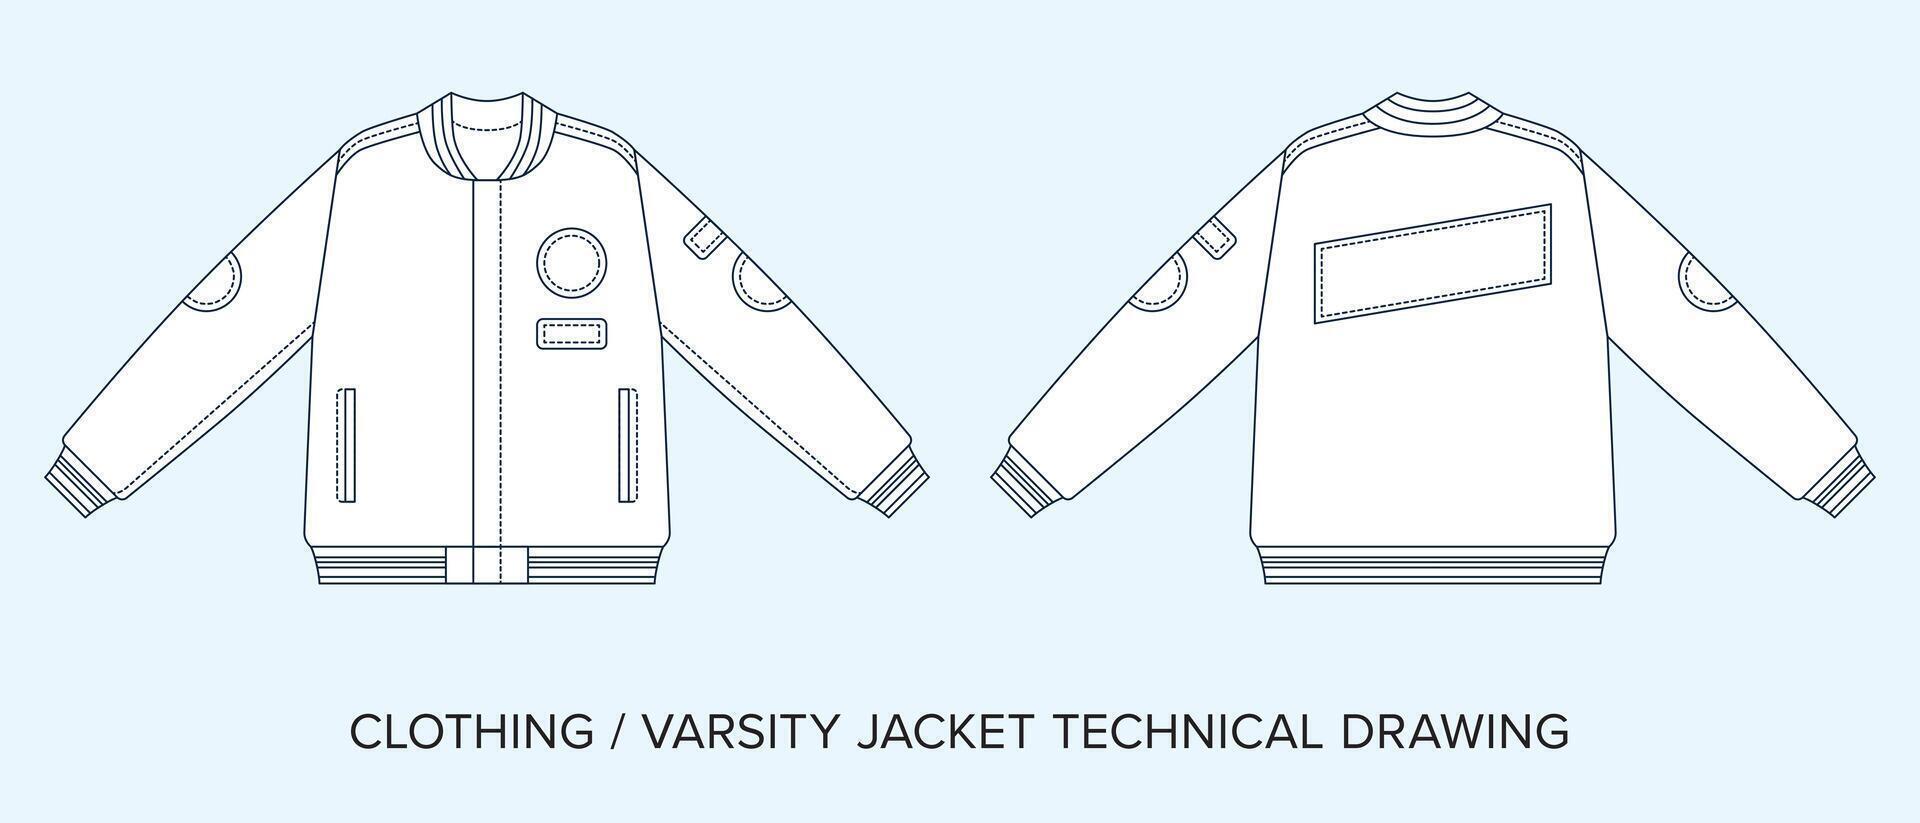 universidad chaqueta con bolsillos y parches, técnico dibujo, vestir Plano para Moda diseñadores vector